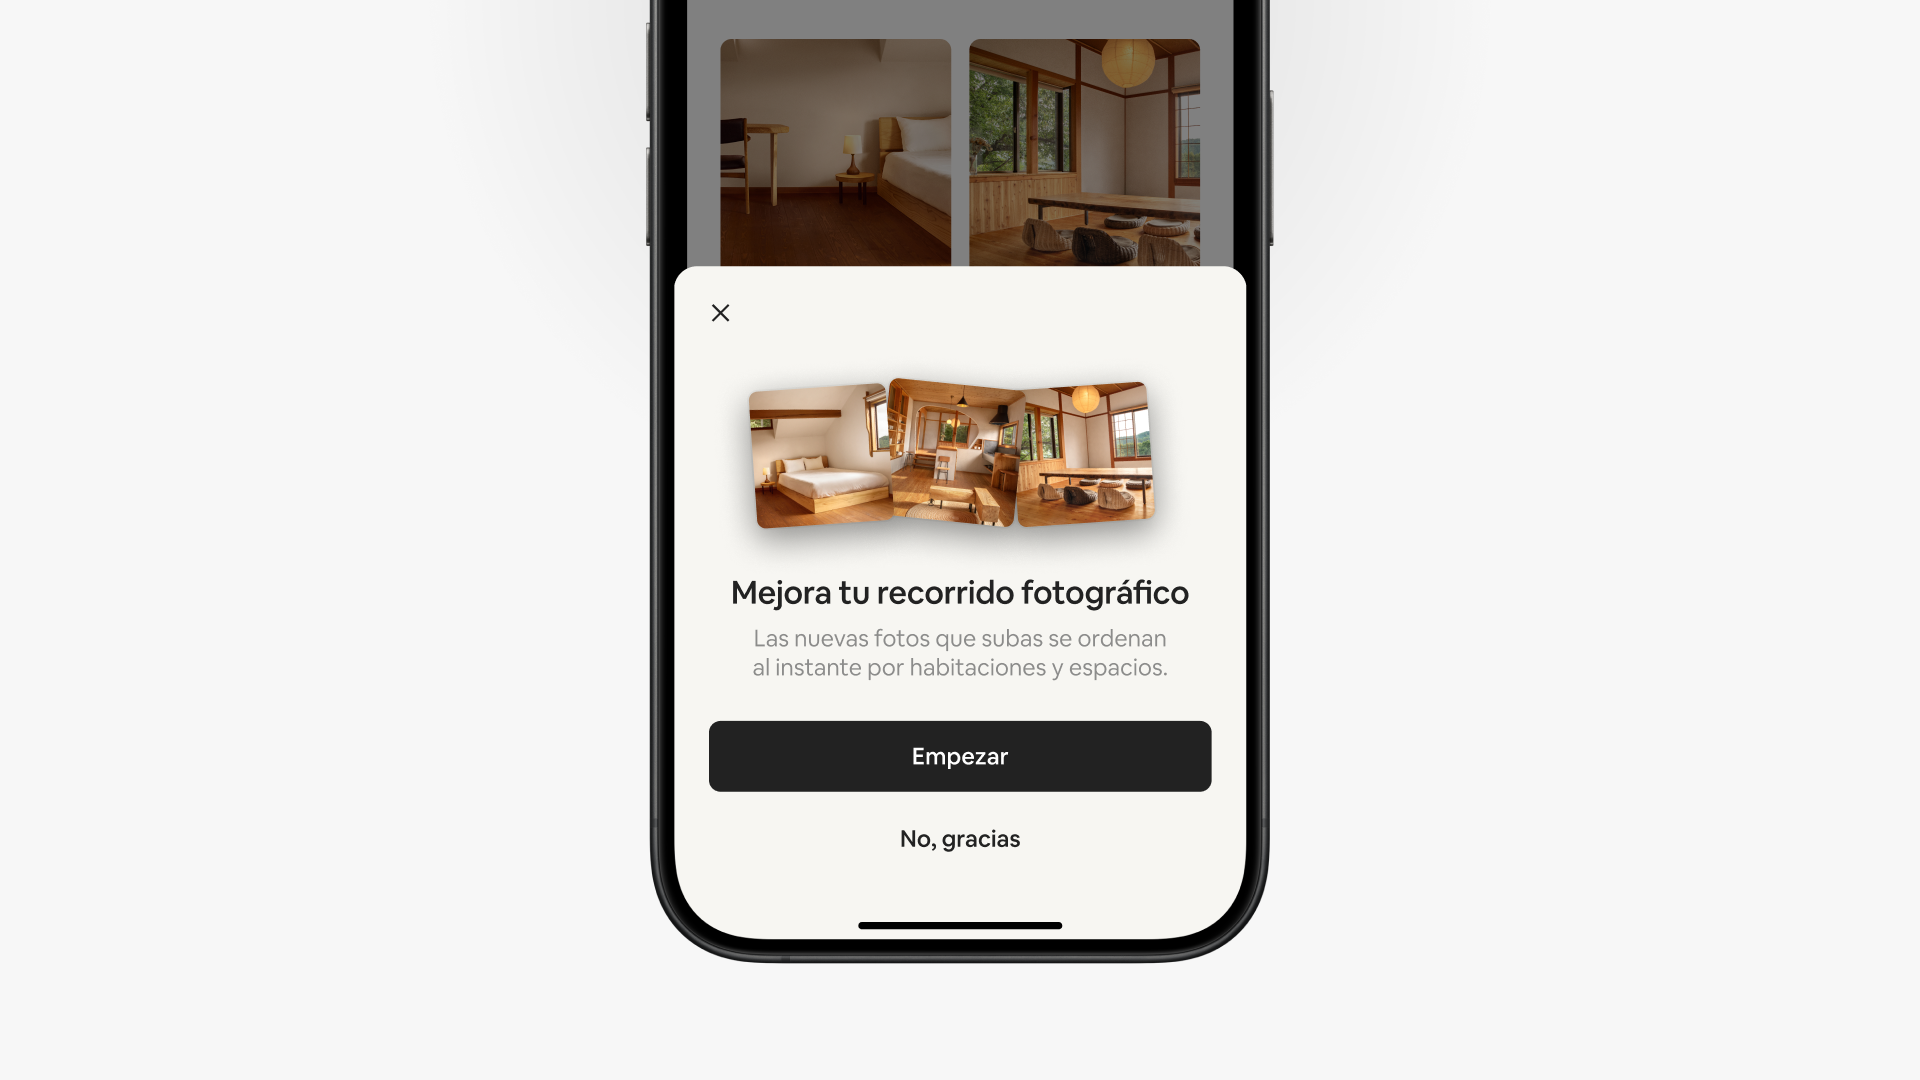 Una pantalla emergente en la aplicación de Airbnb dice «Mejora tu recorrido fotográfico» encima de dos opciones en los botones, «Vamos» y «No, gracias».